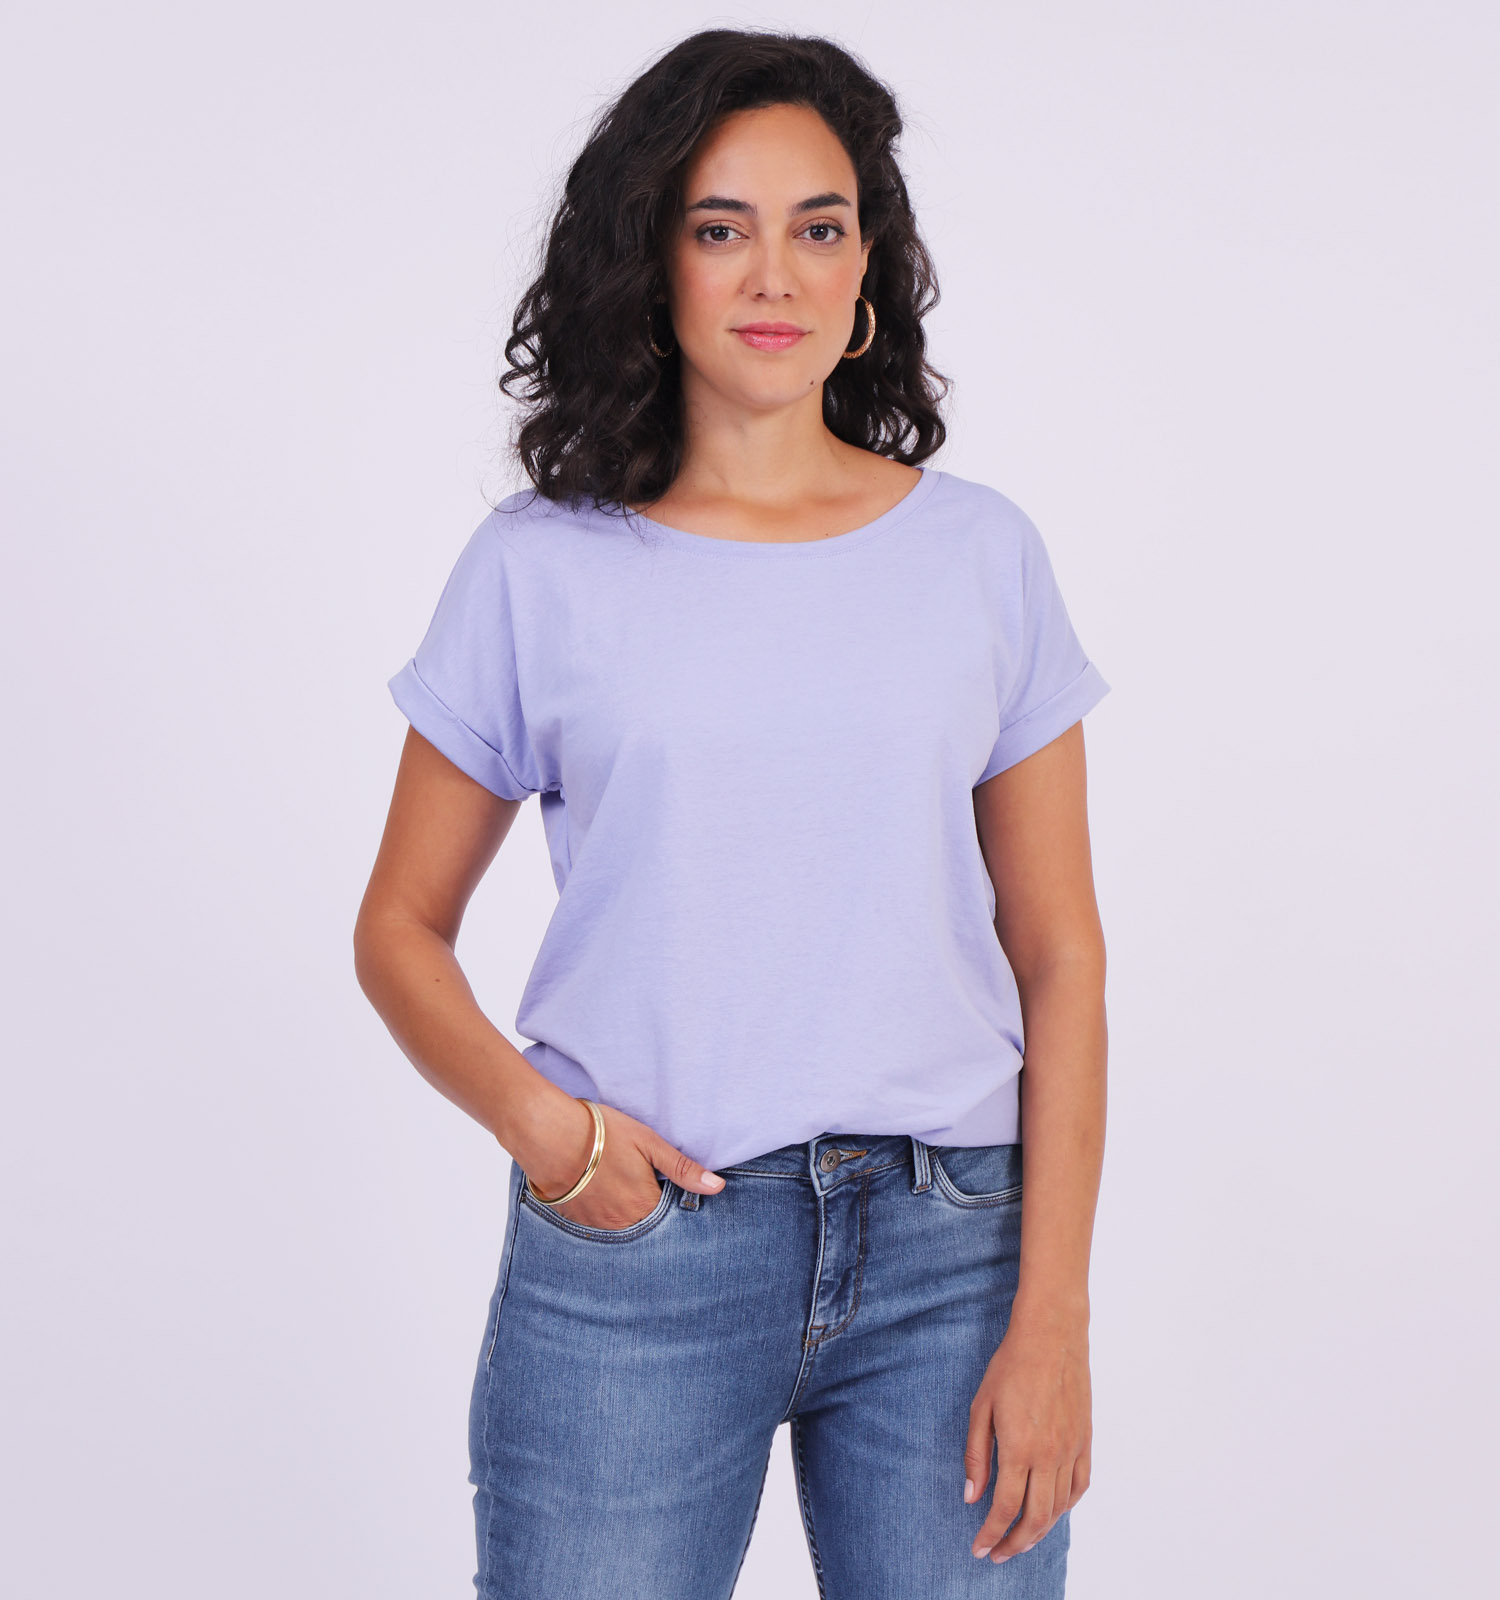 levenslang droom opener Vila Blauwe T-shirt | Dames T-shirts